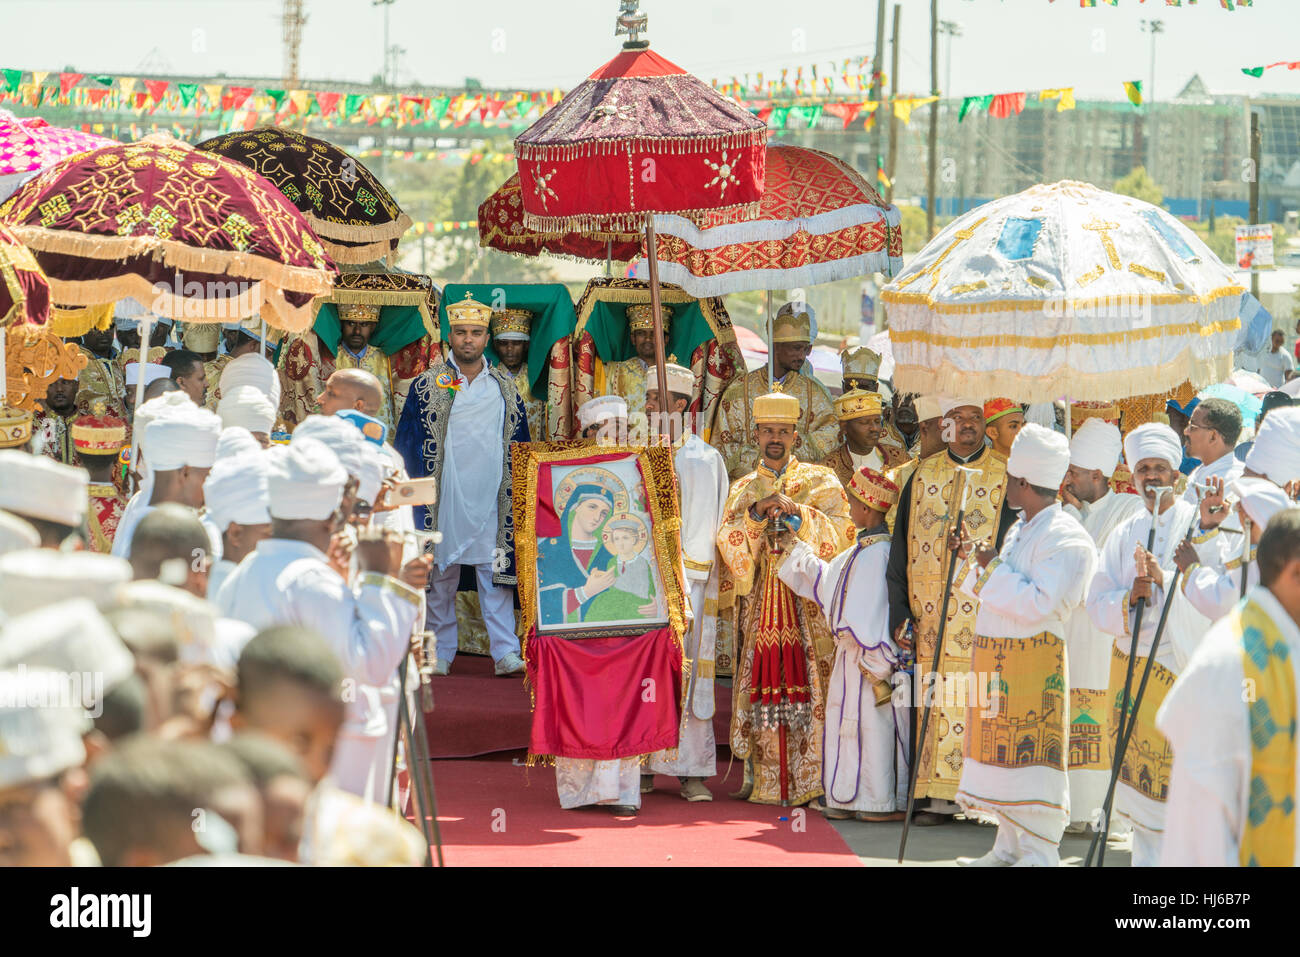 Addis Abeba - Jan 19 : prêtres, accompagnés de membres du clergé, de transporter le Tabot, un modèle de l'Arc d'Alliance, au cours d'une procession colorée de Timket célébrat Banque D'Images